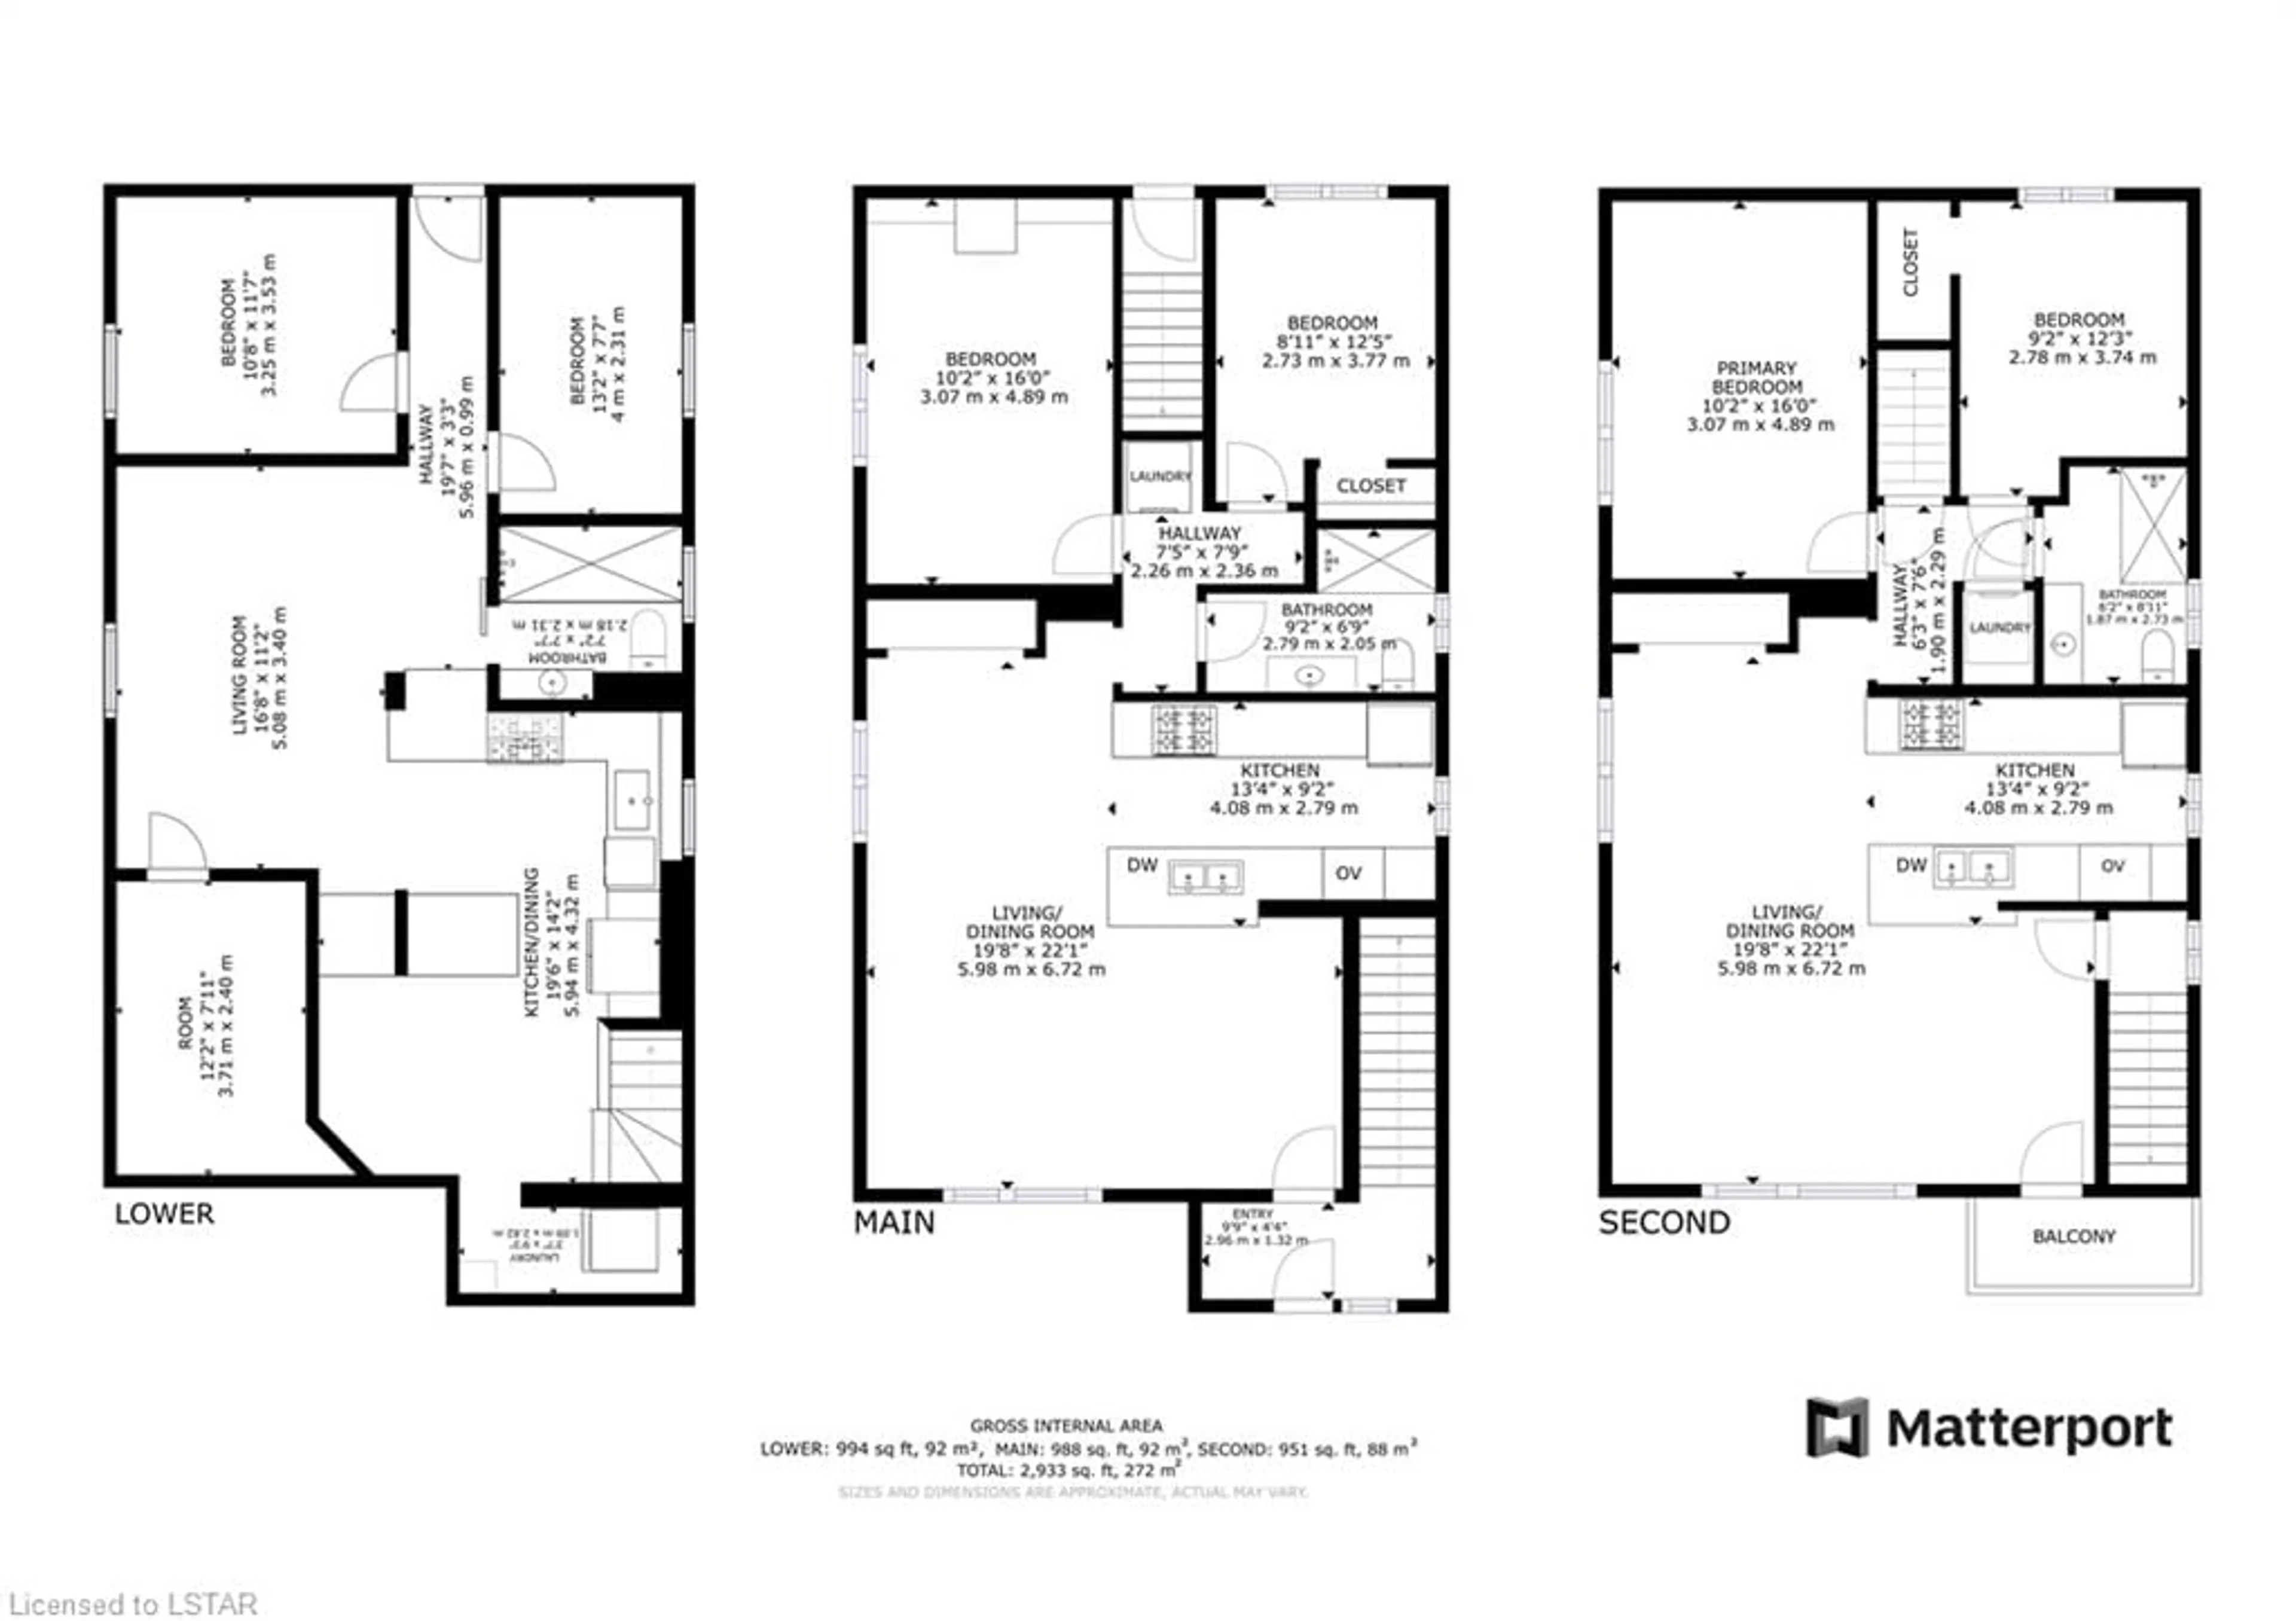 Floor plan for 358 Briarhill Ave, London Ontario N5Y 1N9